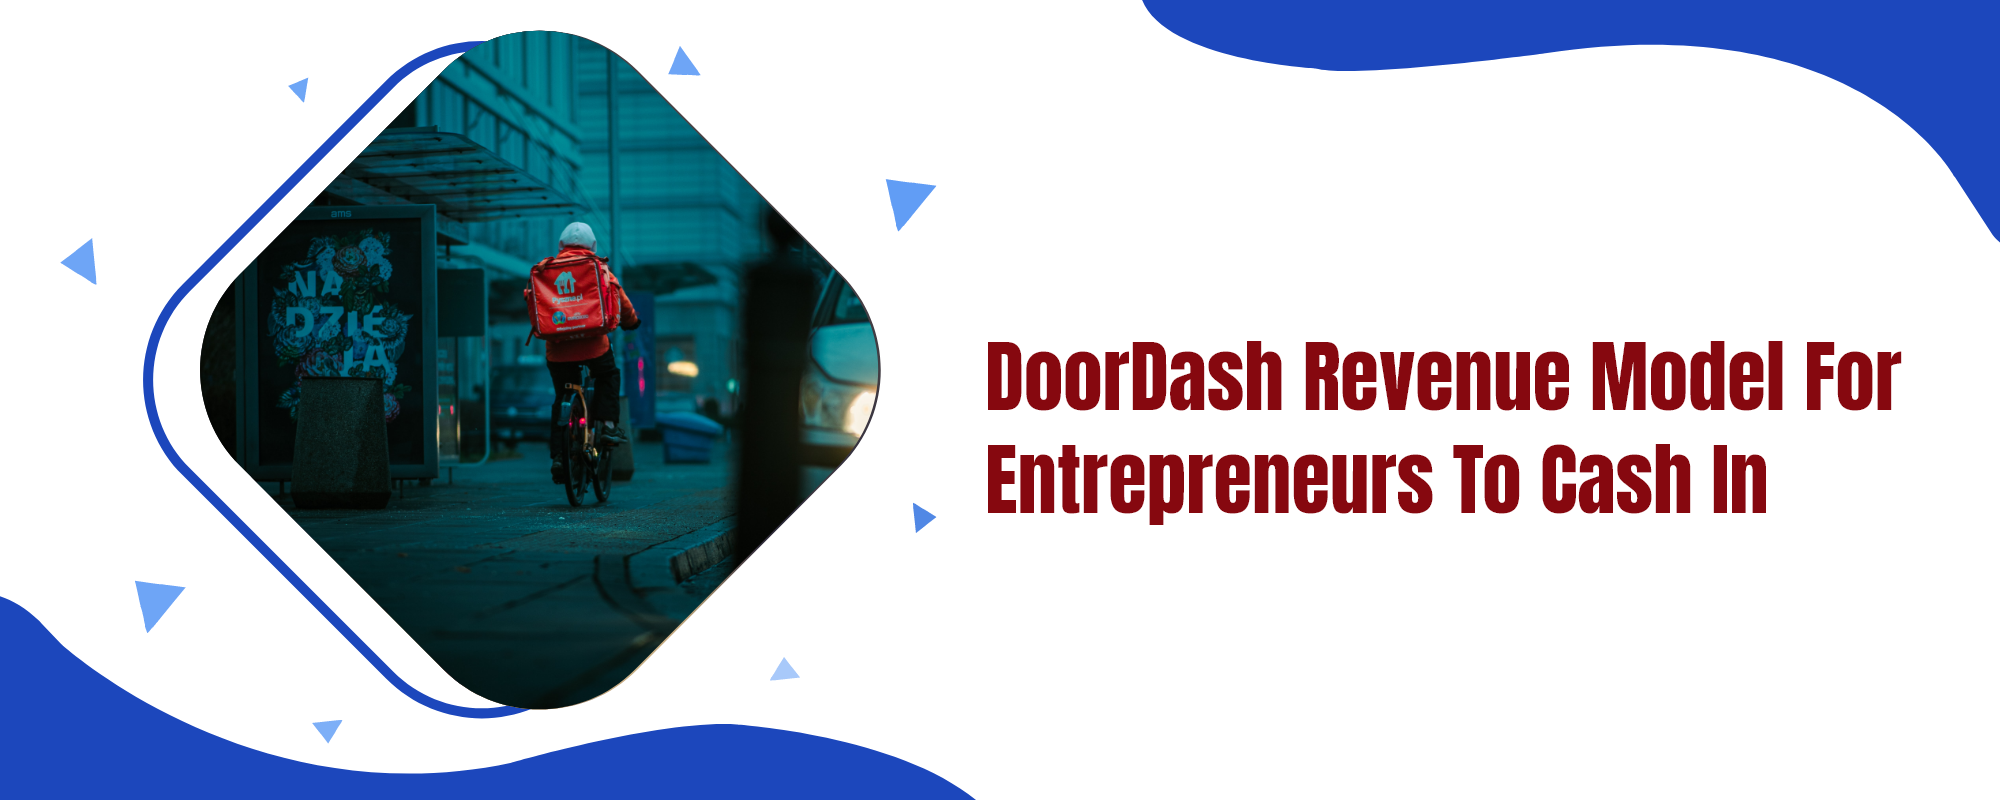 DoorDash revenue model